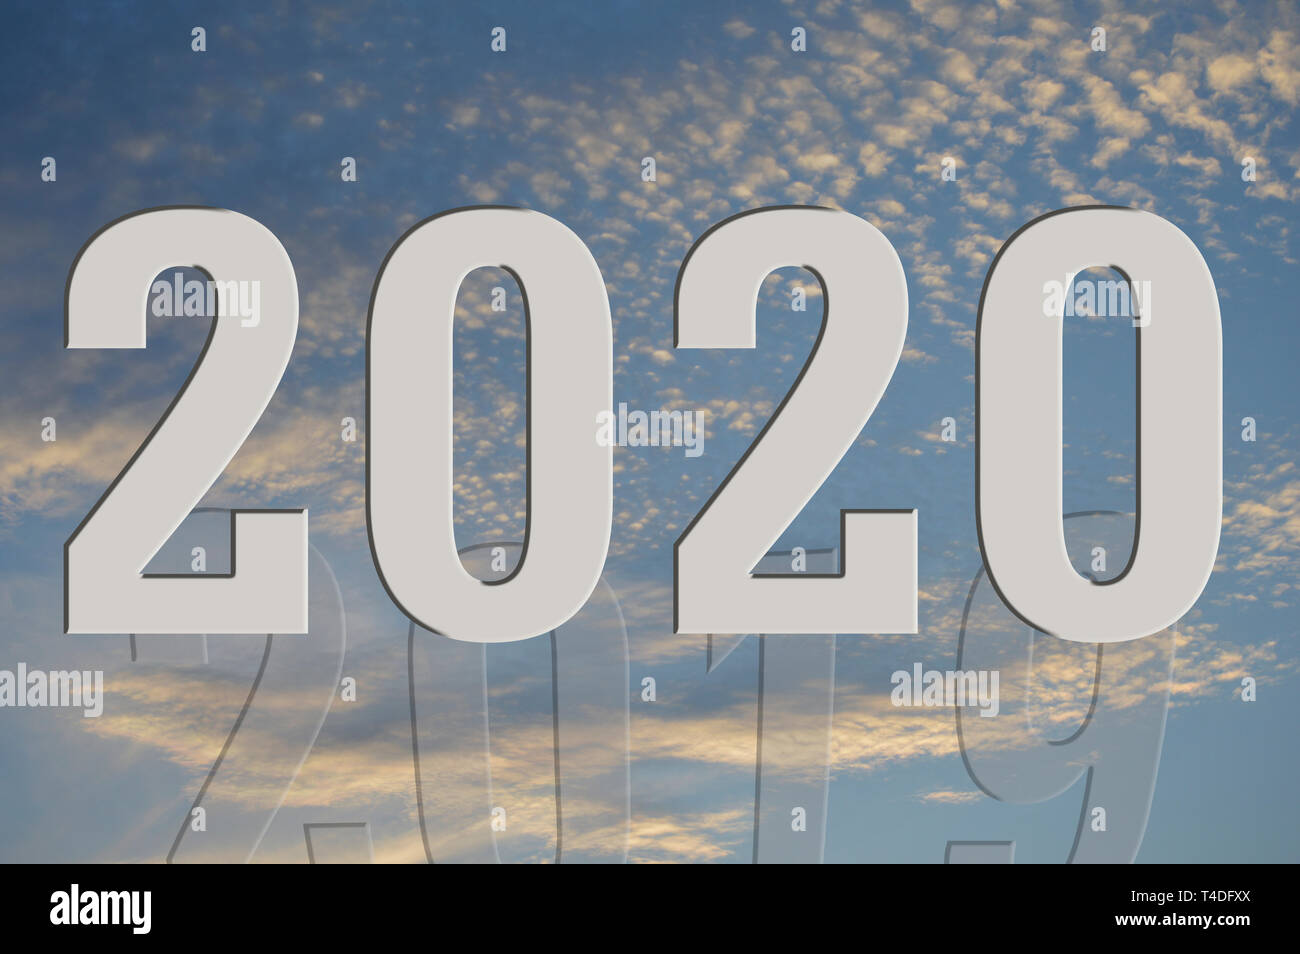 Un plan graphique montrant 2019 disparaître alors que 2020 commence fort. Banque D'Images